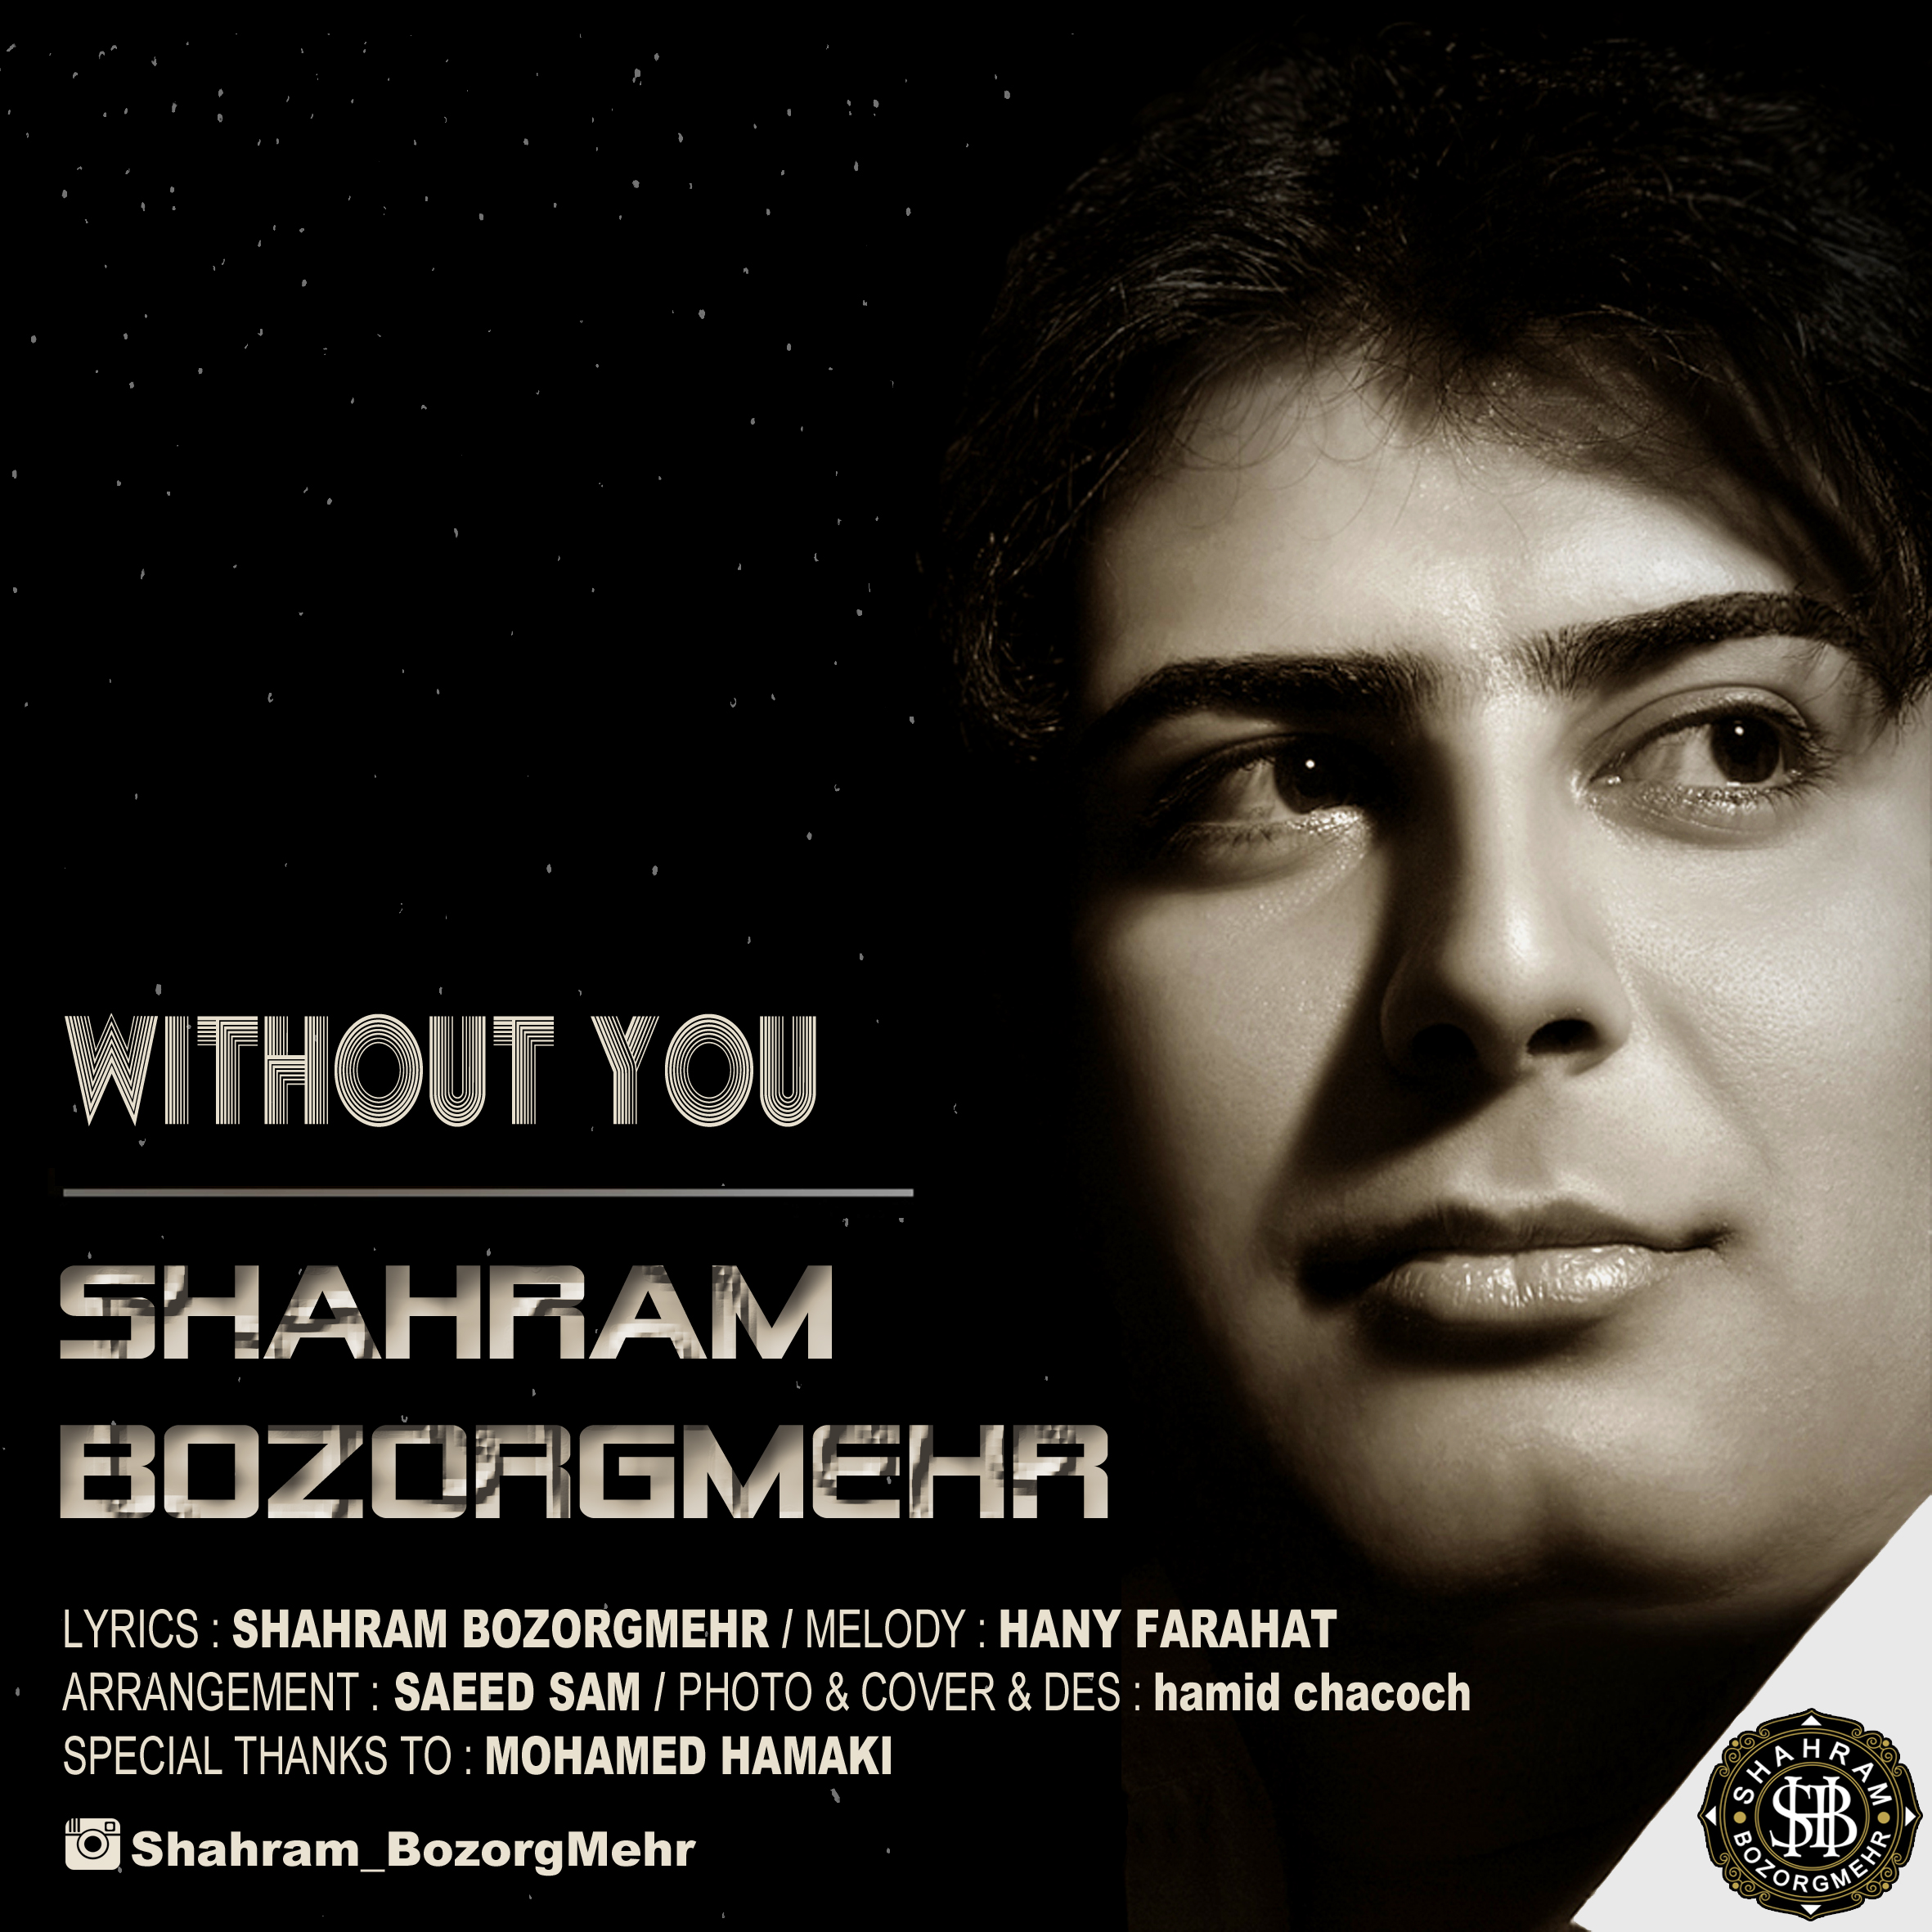  دانلود آهنگ جدید شهرام بزرگمهر - بی تو | Download New Music By Shahram Bozorgmehr - Bi To